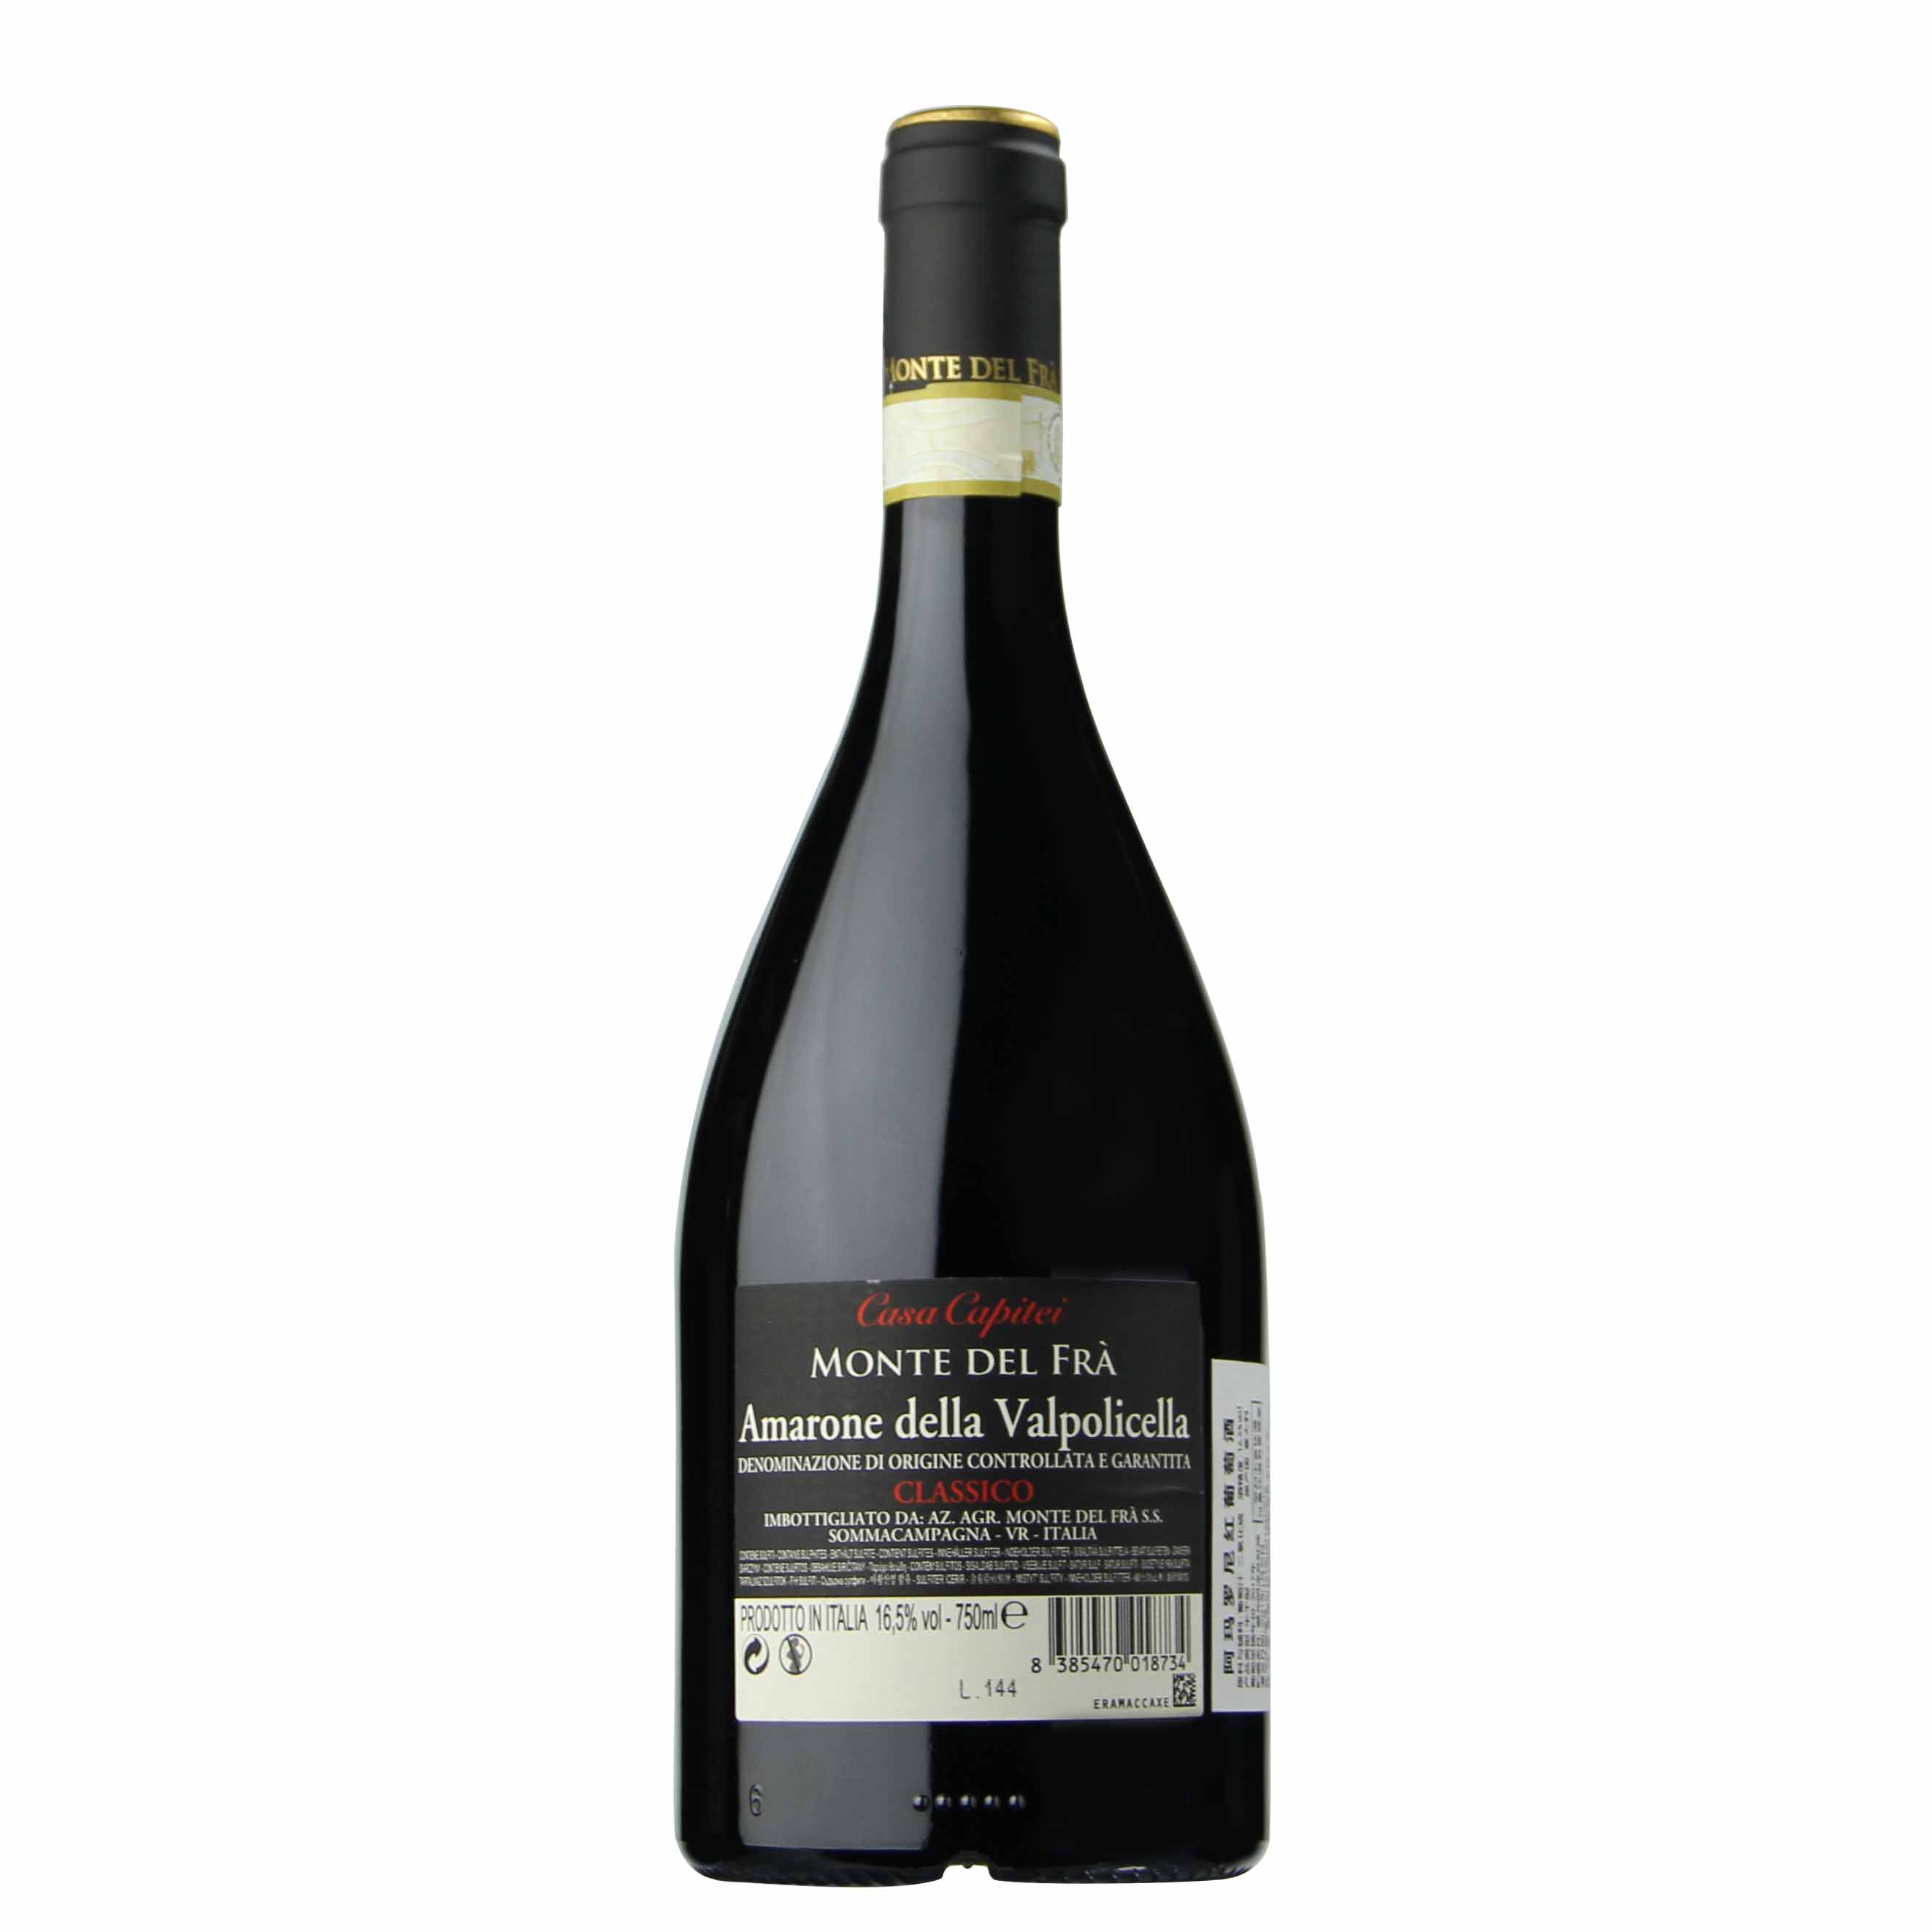 意大利瓦坡里切拉经典阿玛罗尼Amarone红葡萄酒